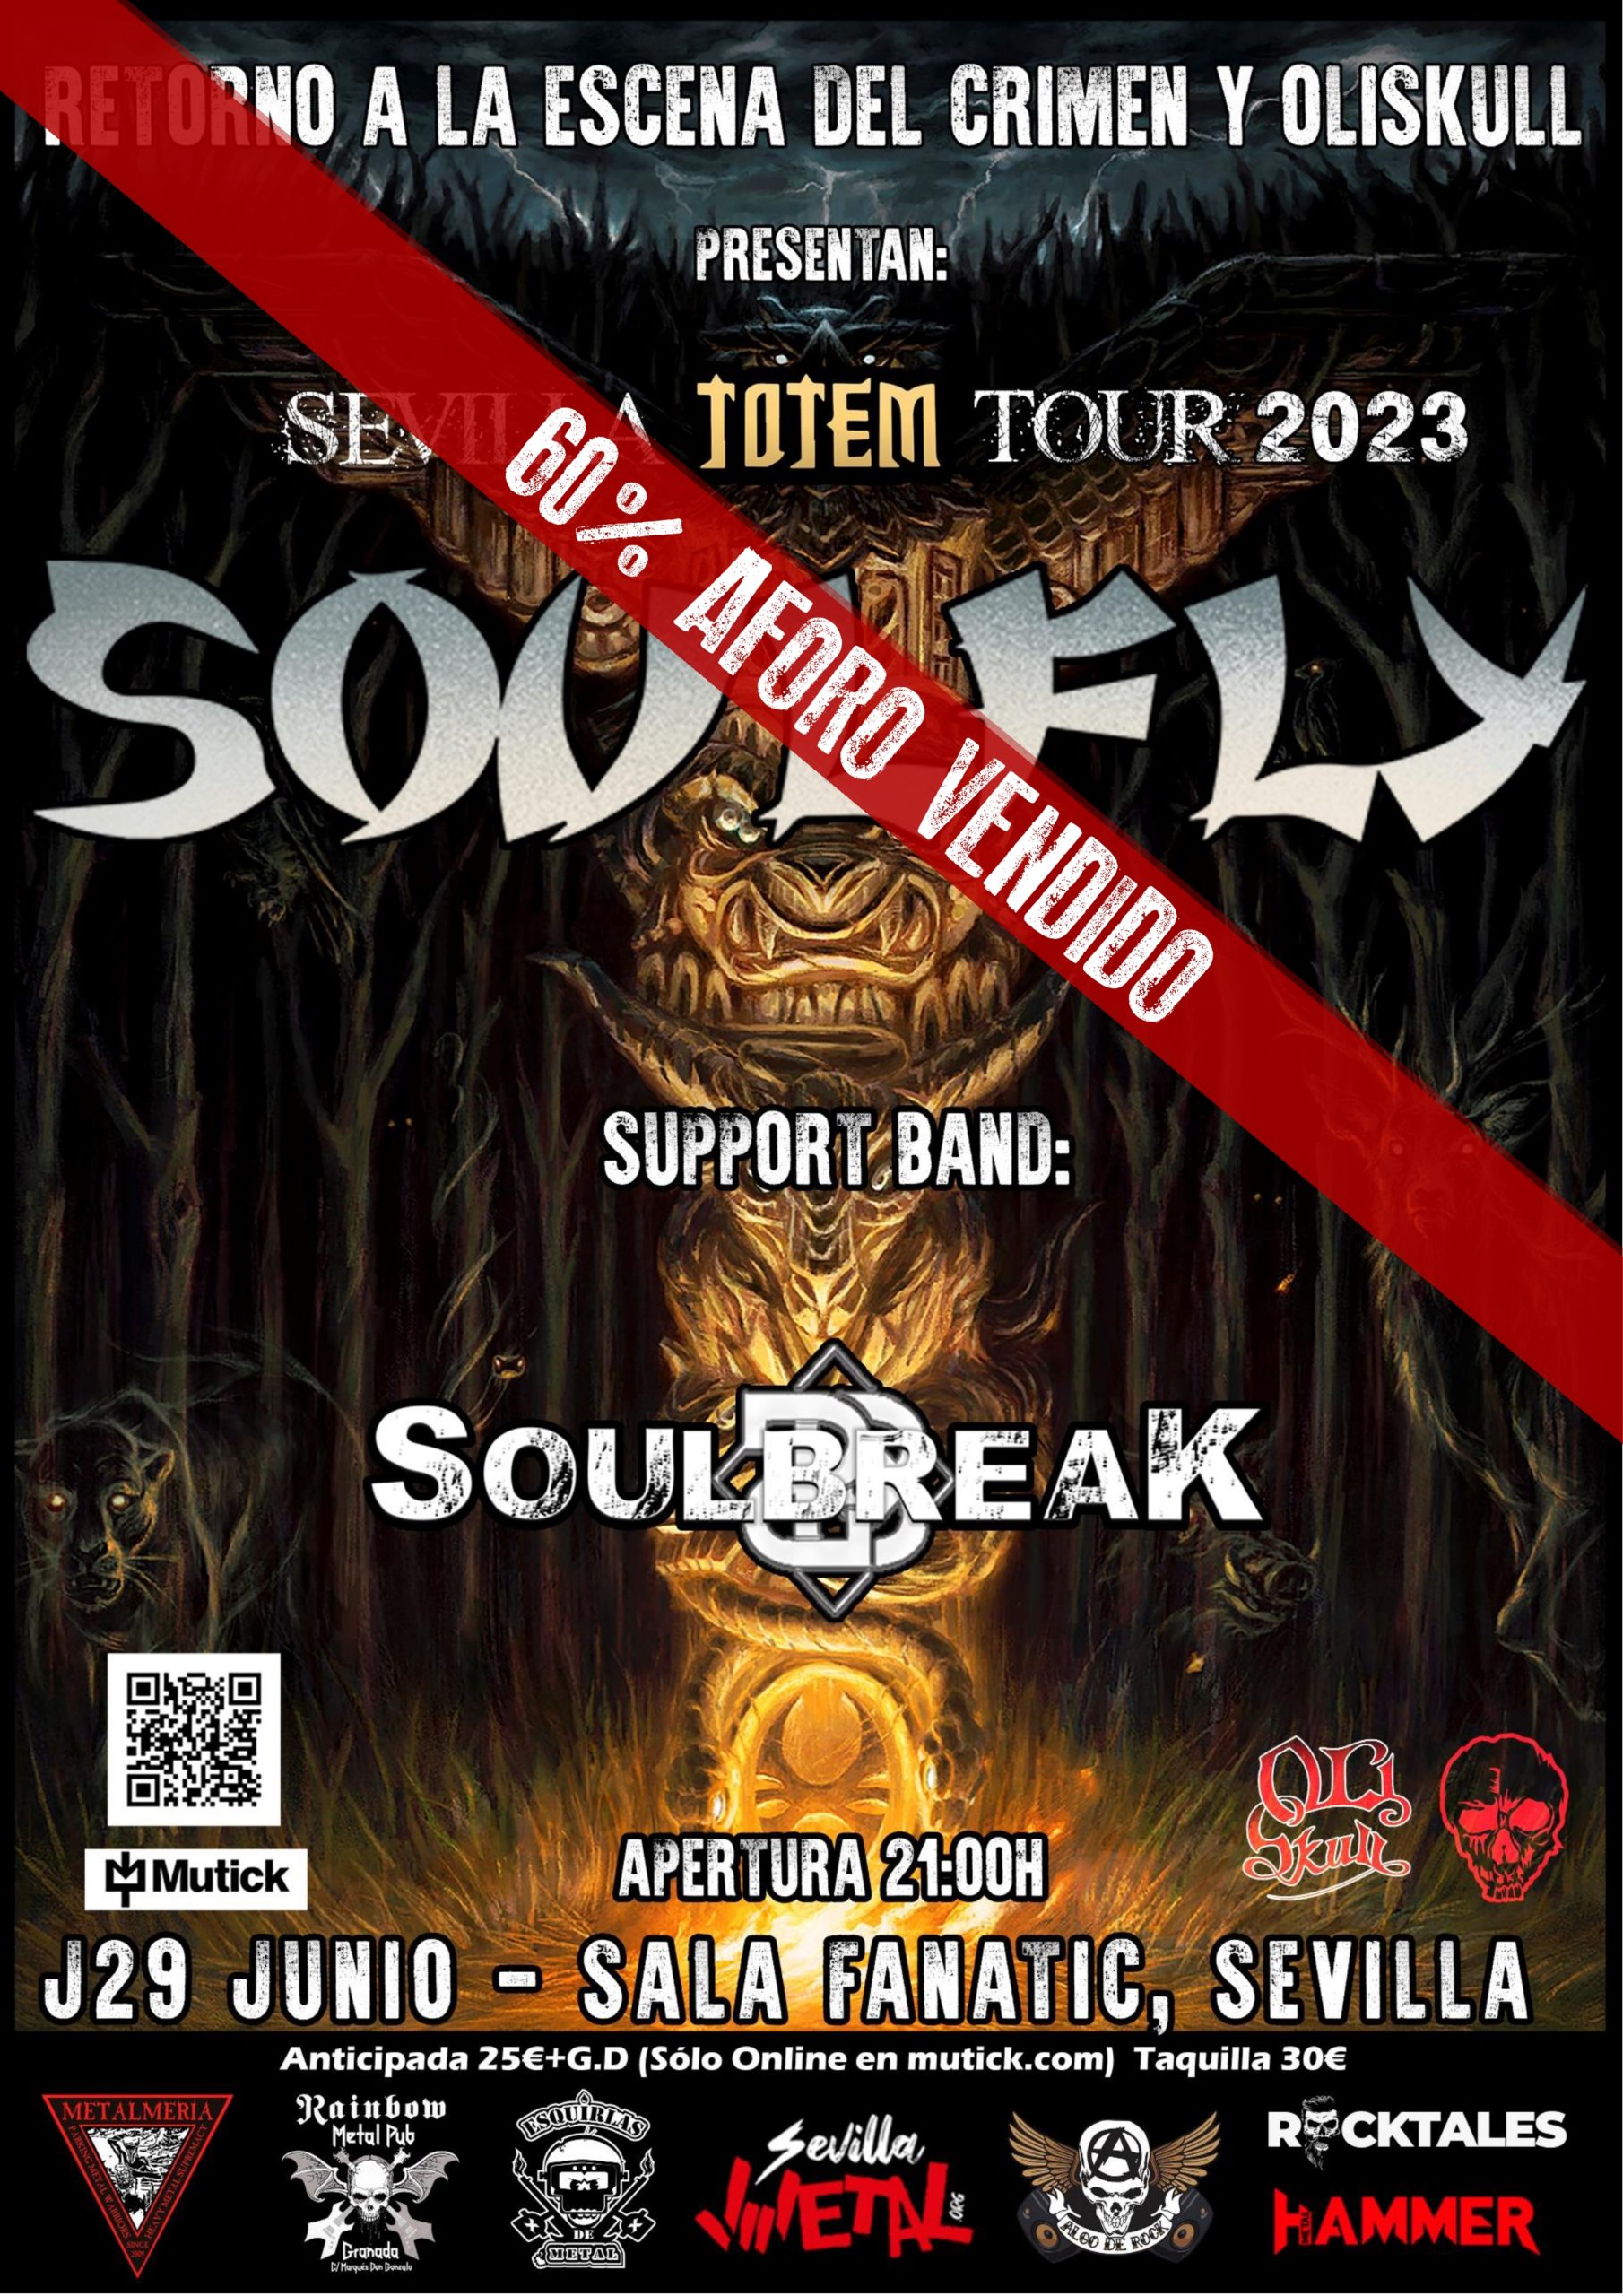 Soulfly: 60% de entradas vendidas para su concierto en Sevilla el 29 de junio